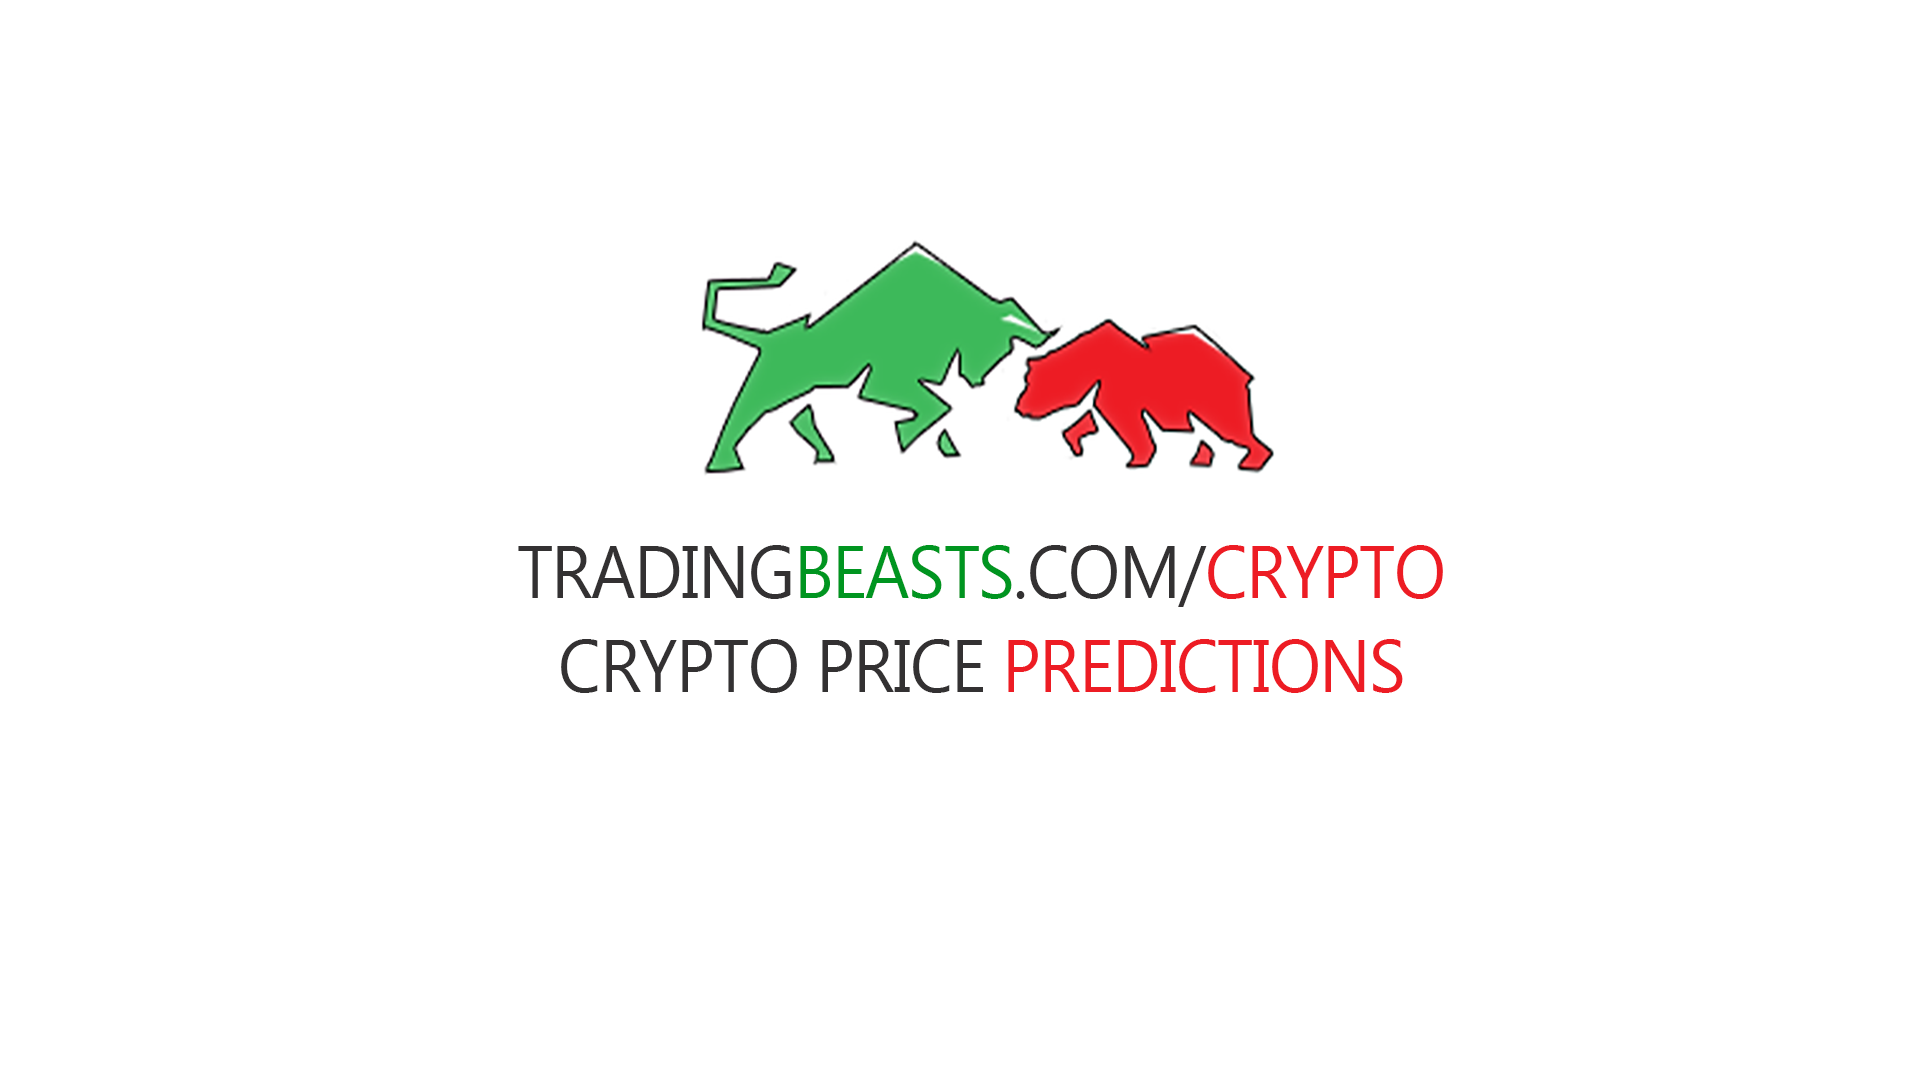 Gifto (GTO) Price Prediction 2022, 2023-2025